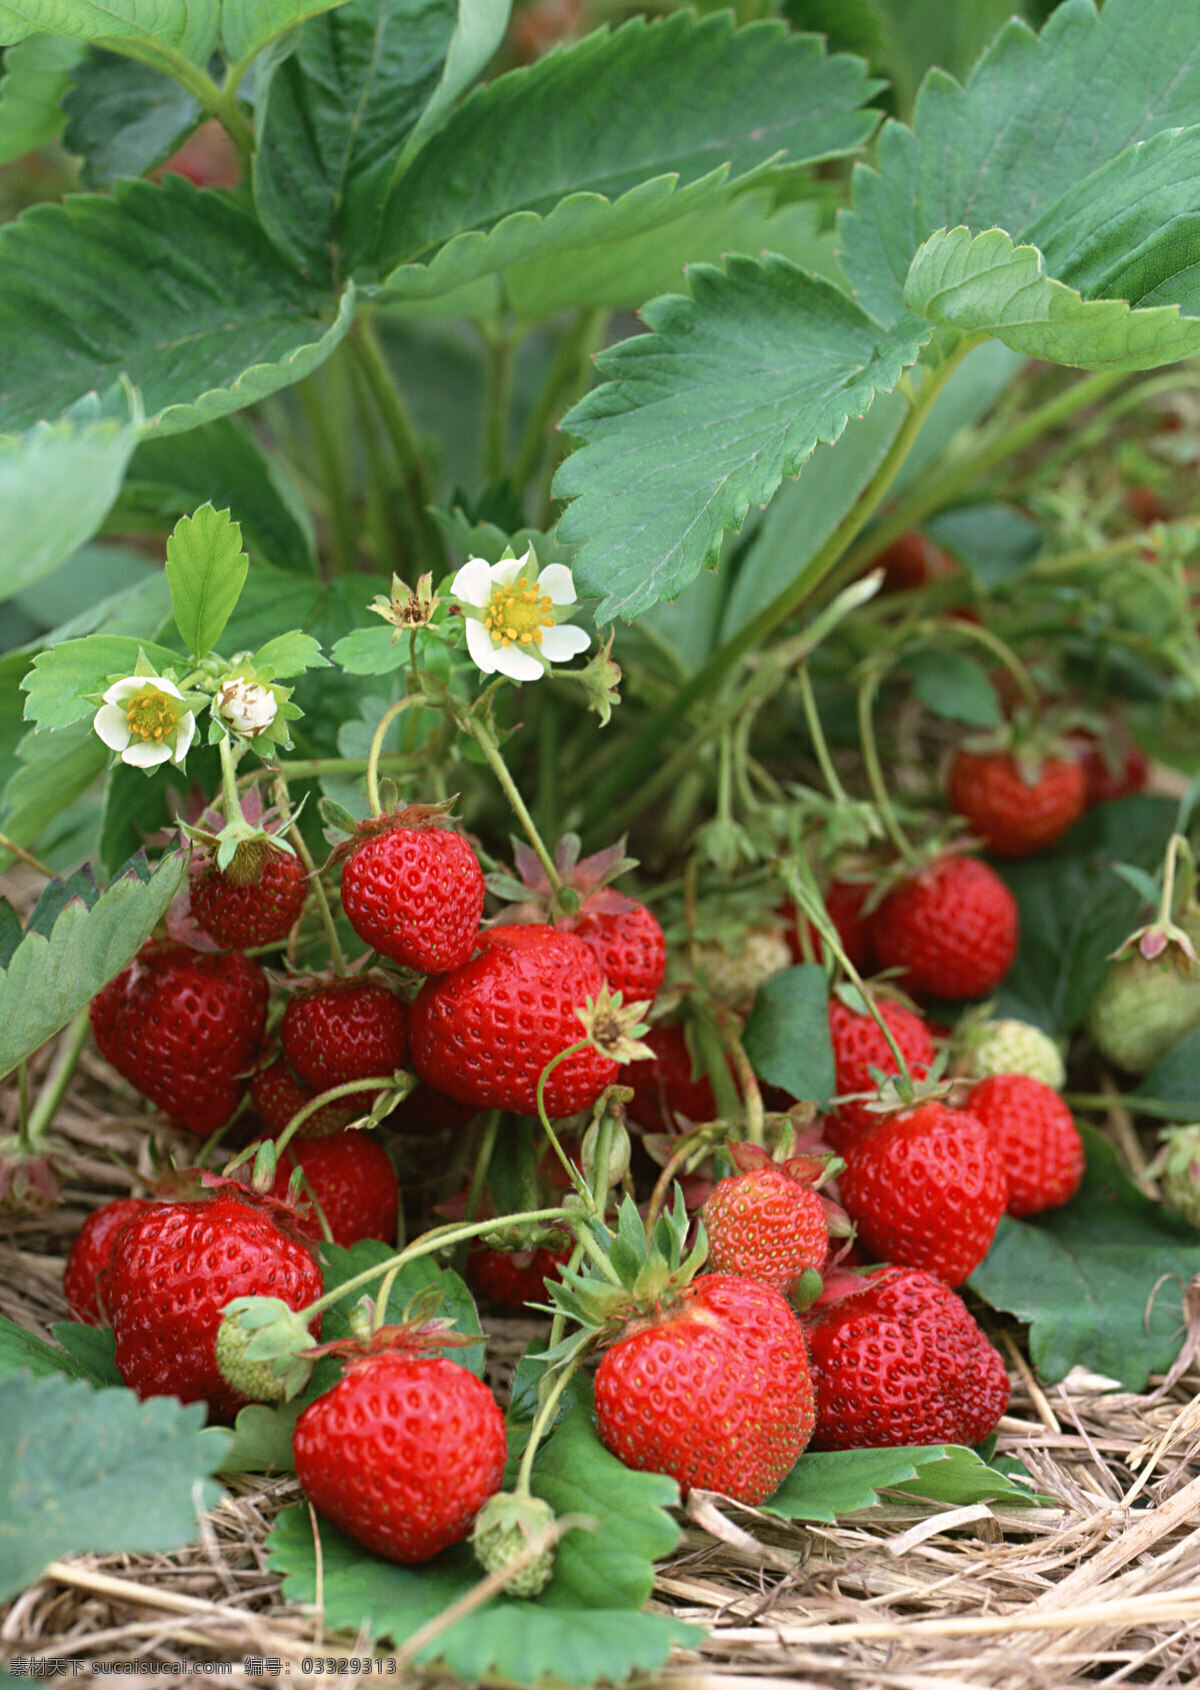 草莓高清 草莓 新鲜草莓 鲜红 草莓地 水果 新鲜水果 原生态 摄影图片 水果图片 水果素材 健康水果 水果蔬菜 餐饮美食 黑色